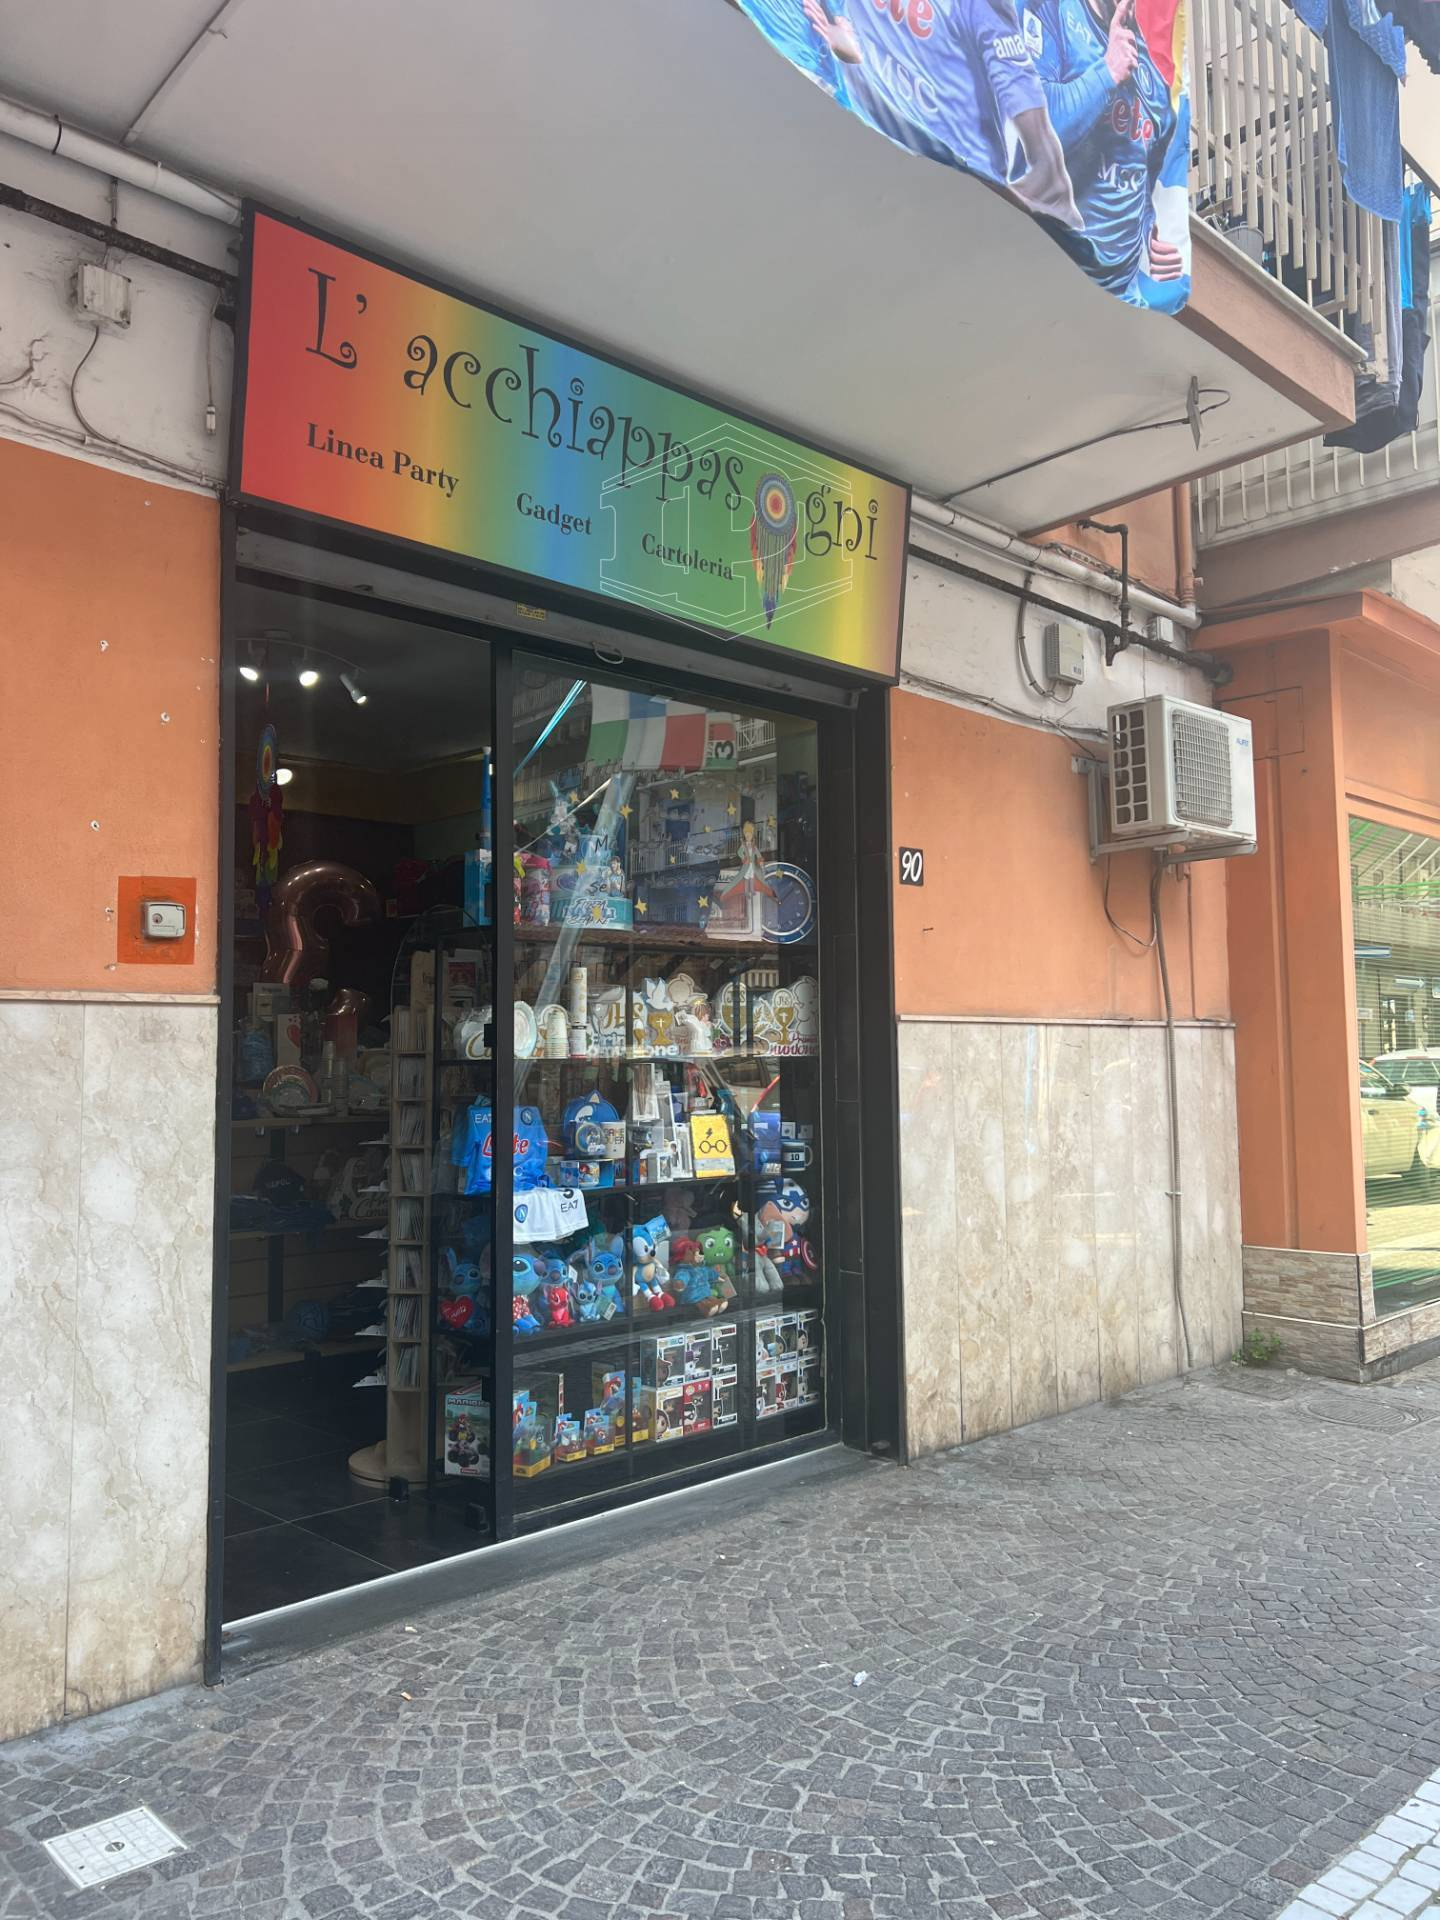 Locale commerciale in Via S. Dalì 90, Napoli (NA)